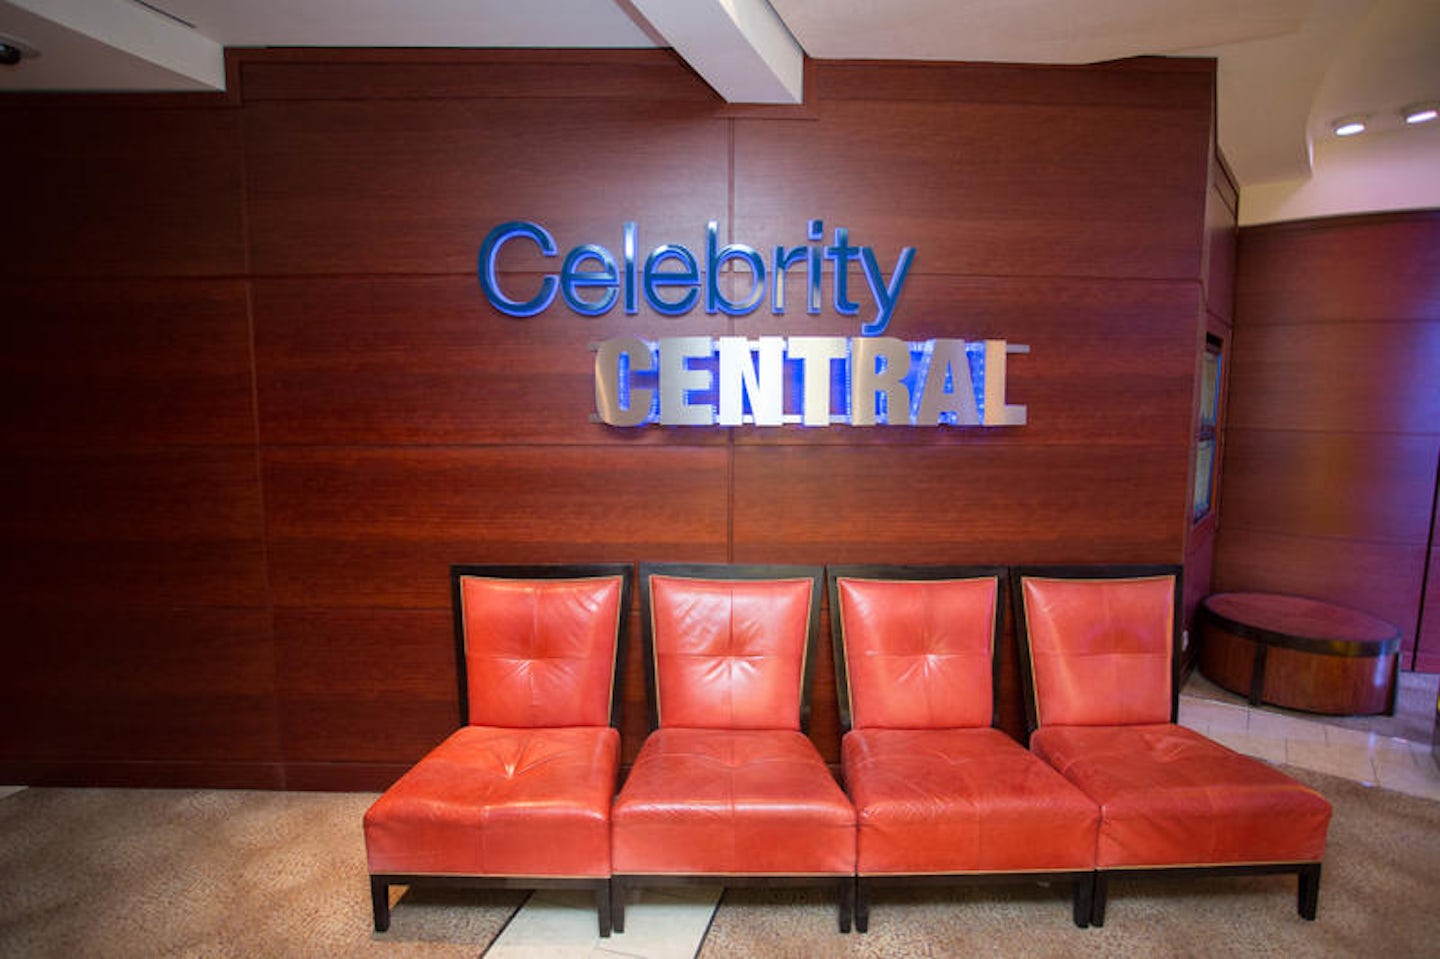 Celebrity Central on Celebrity Solstice